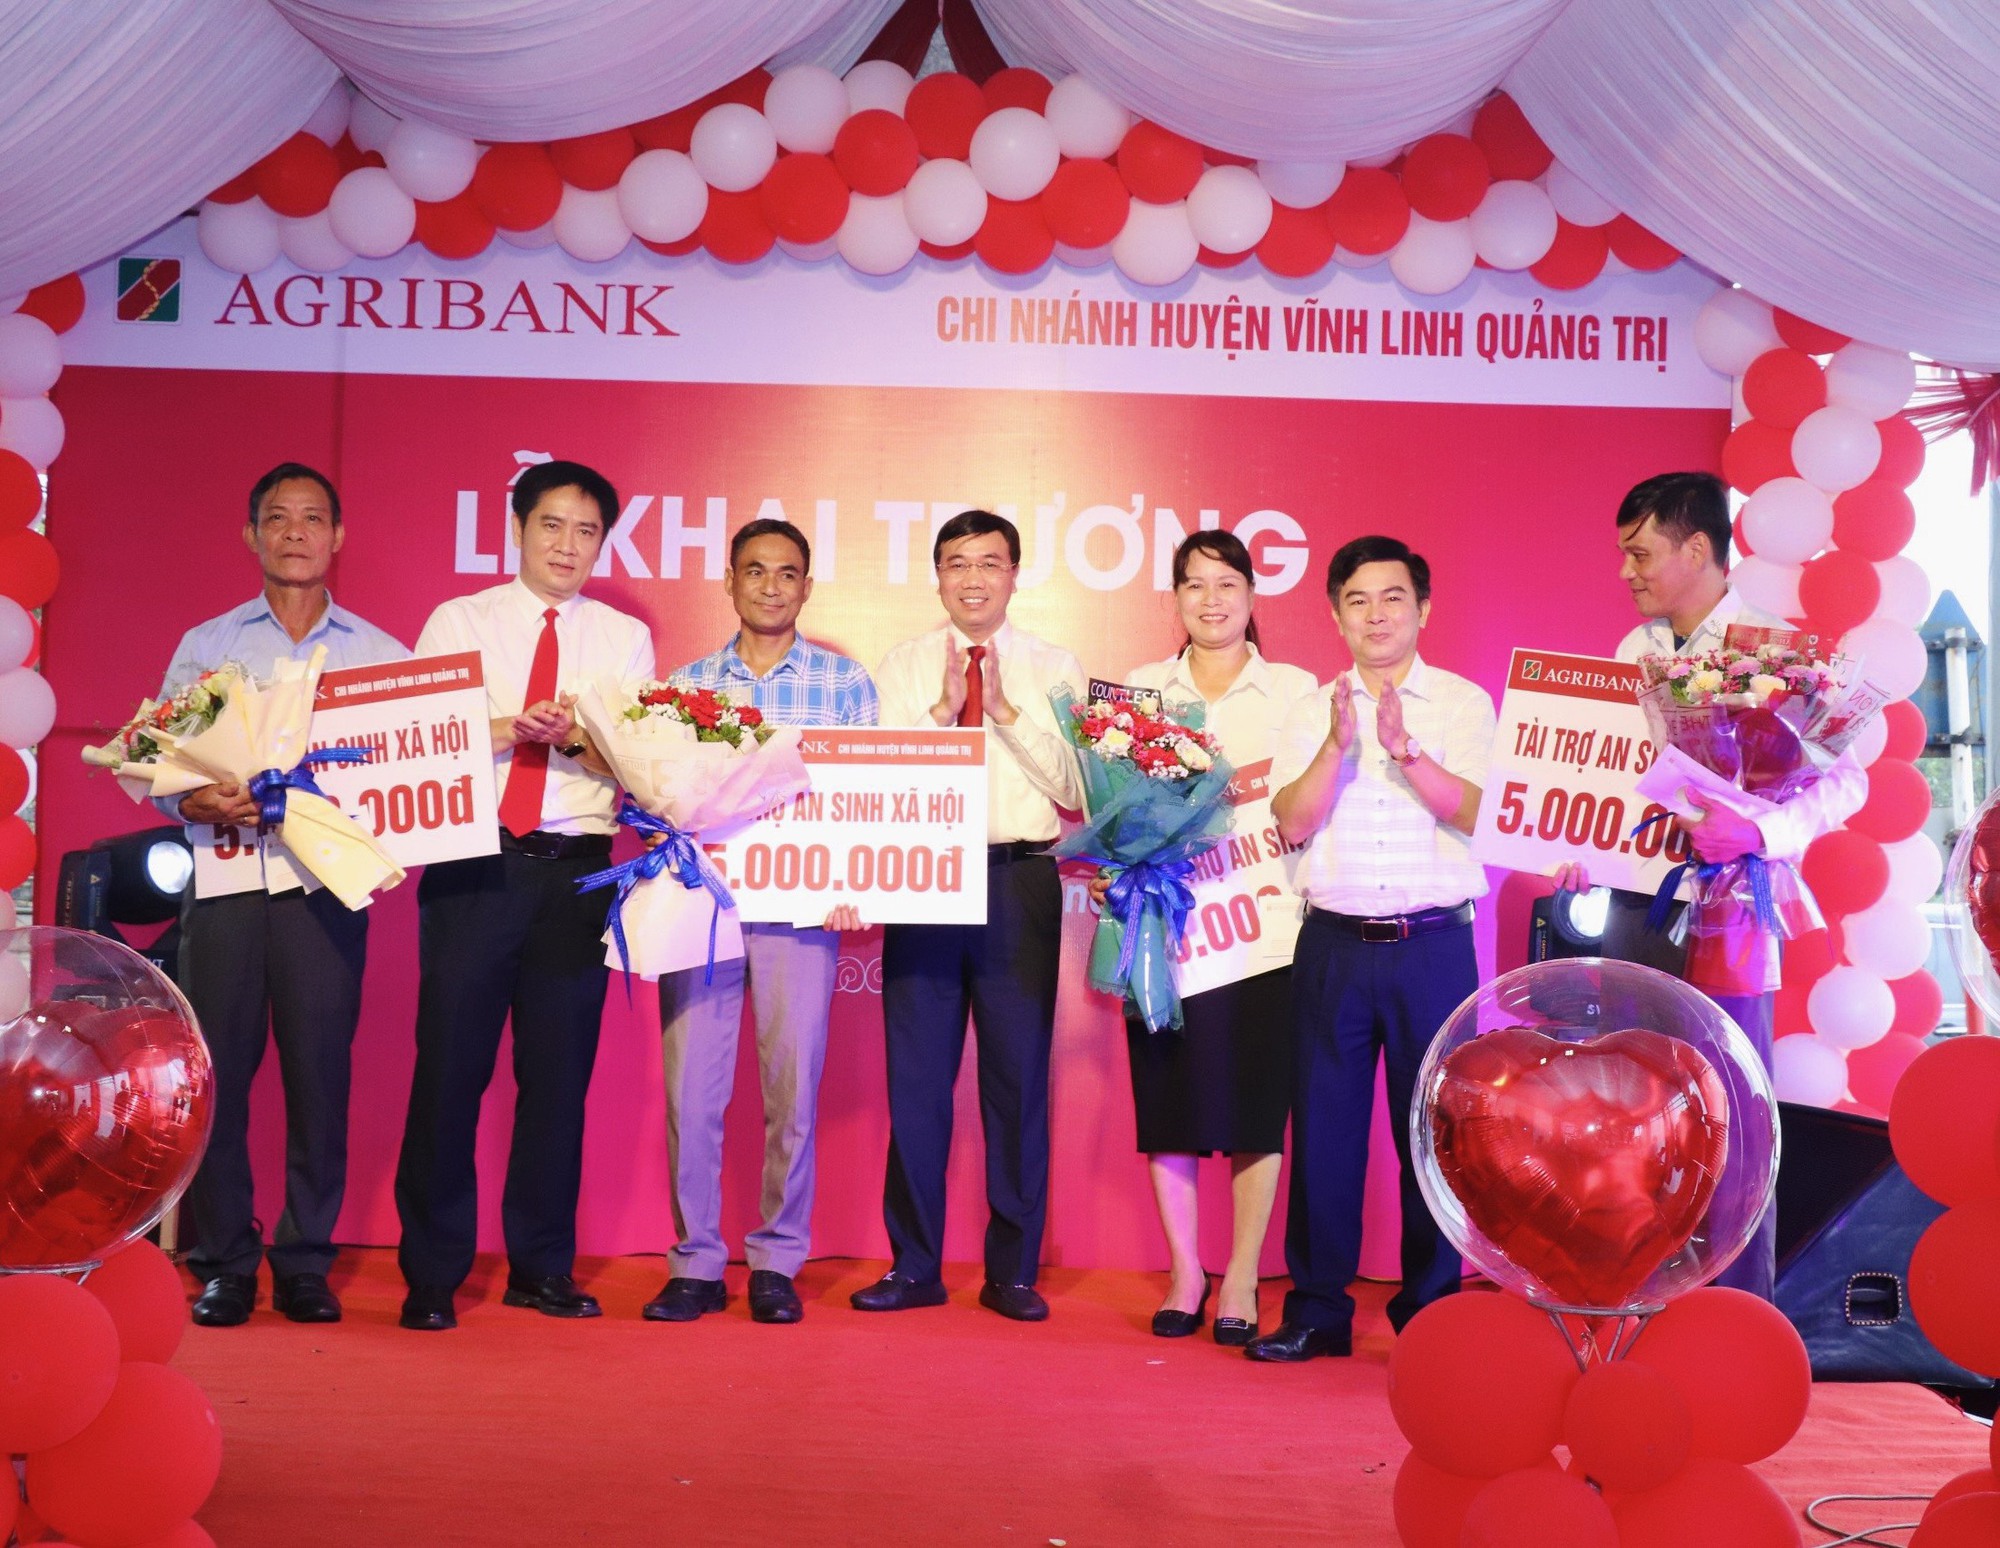 Quảng Trị: Agribank khai trương Phòng giao dịch Bến Quan – Chi nhánh huyện Vĩnh Linh - Ảnh 2.